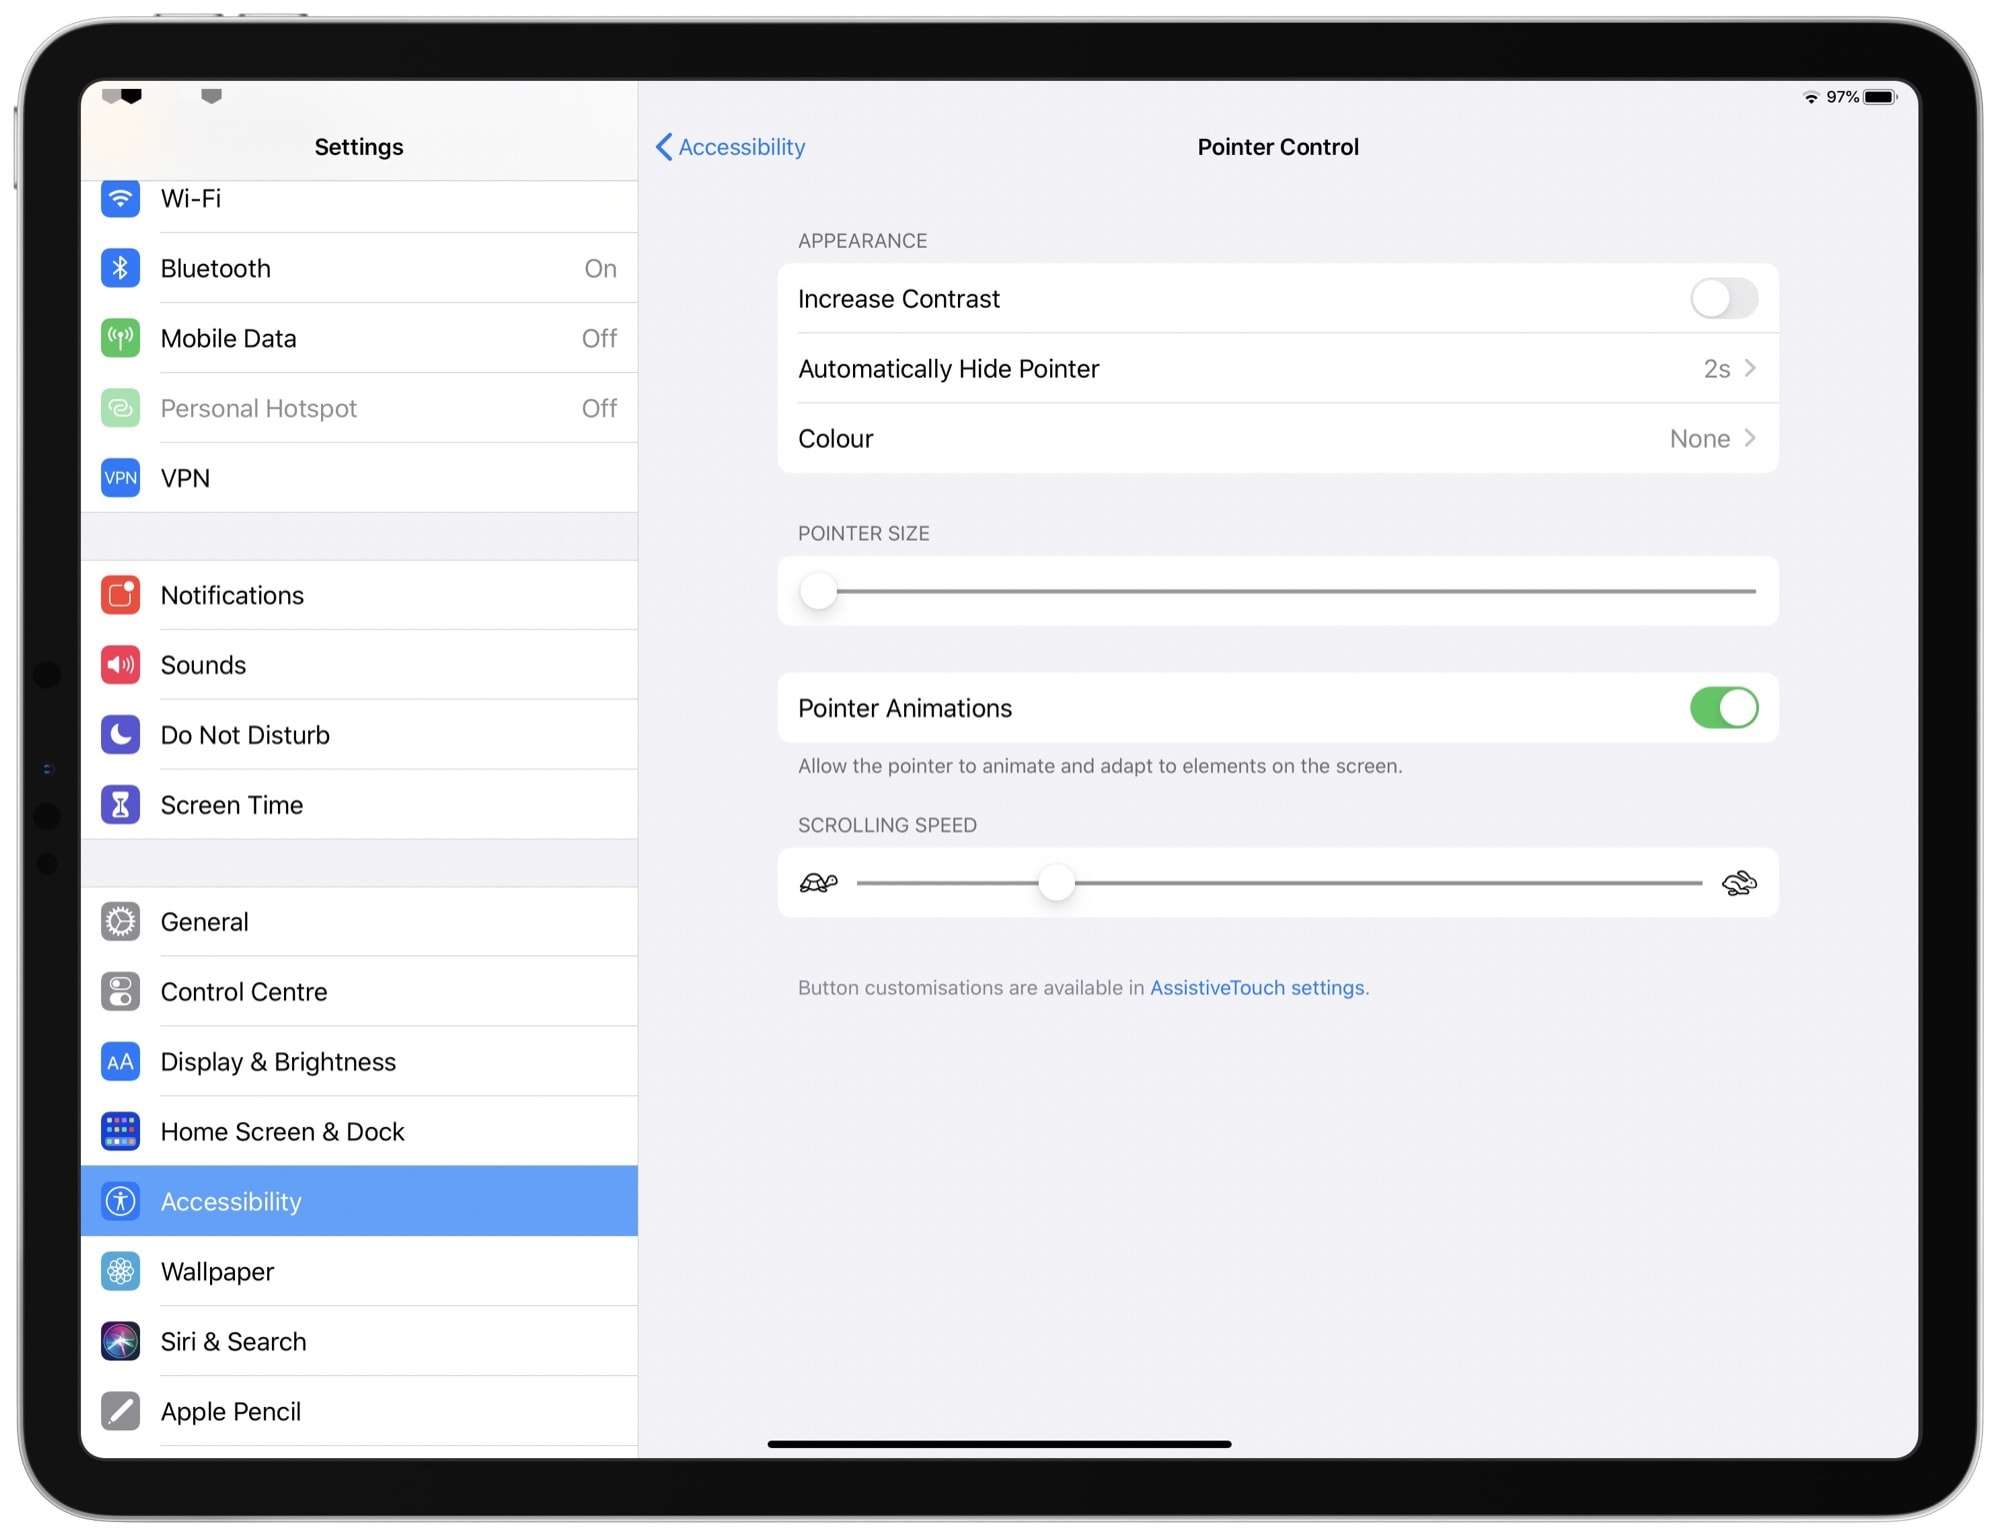 iOS 13.4 and iPadOS 13.4 - Pointer Control